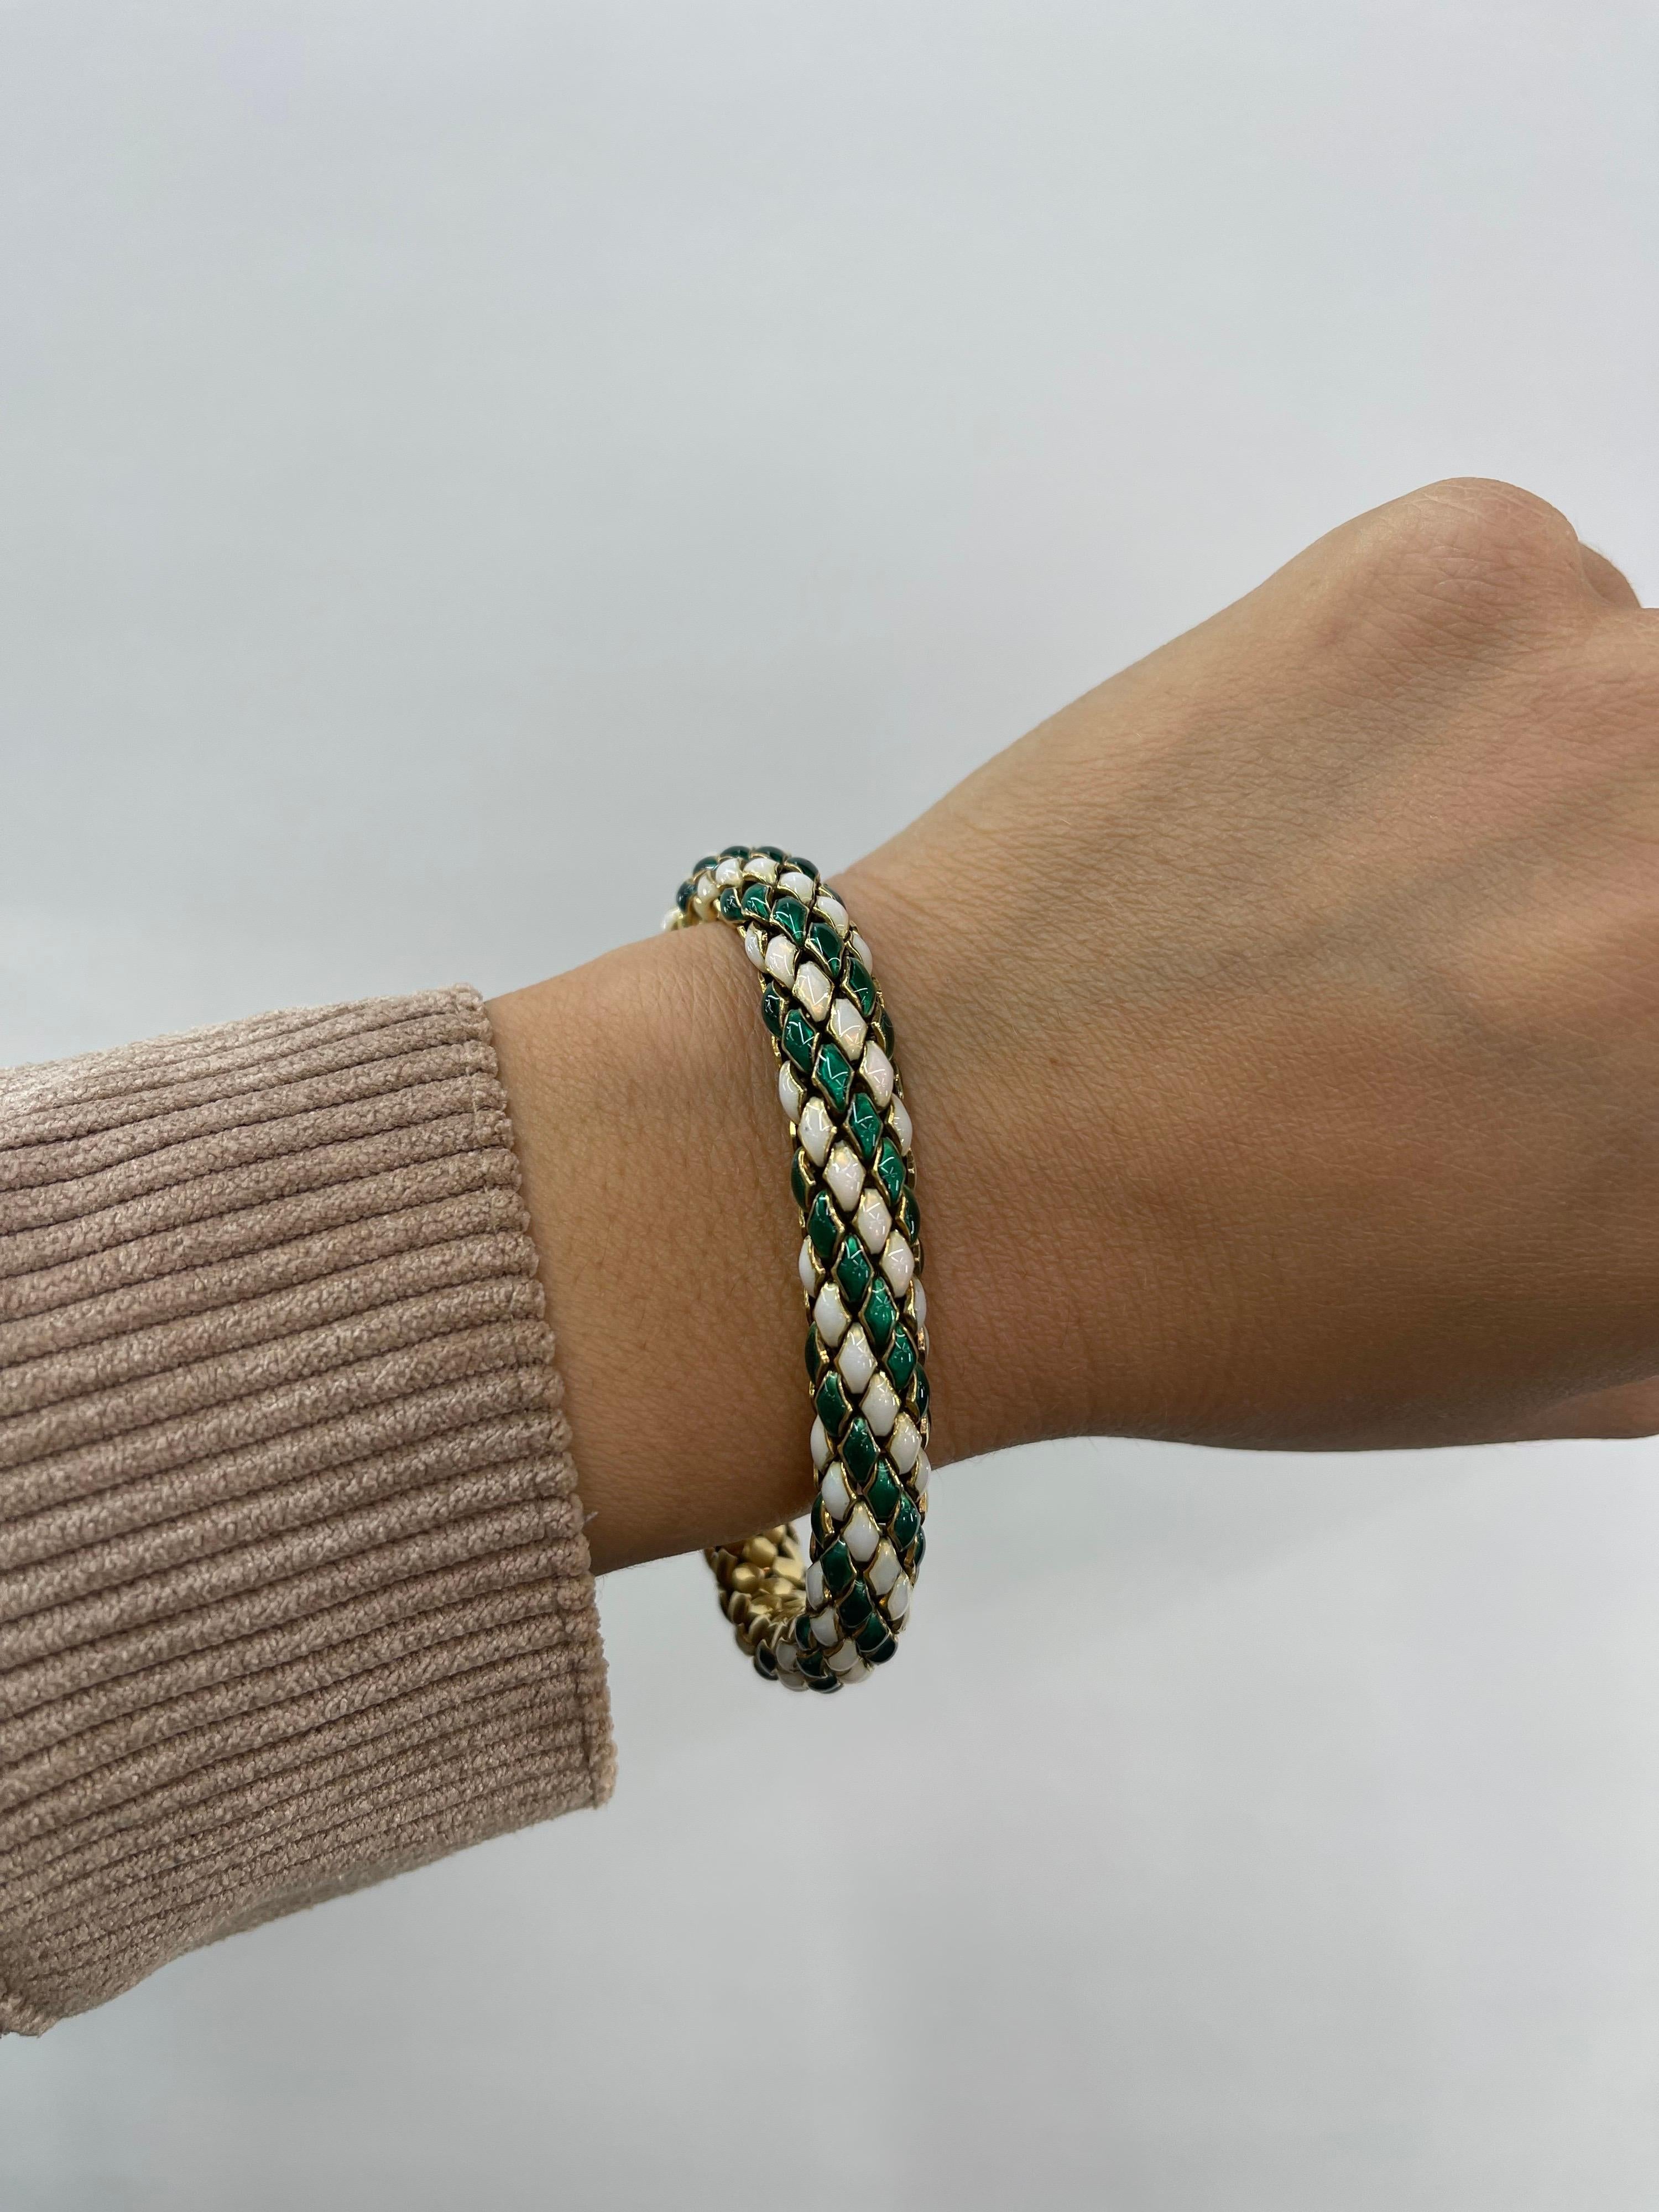 green and white bracelet